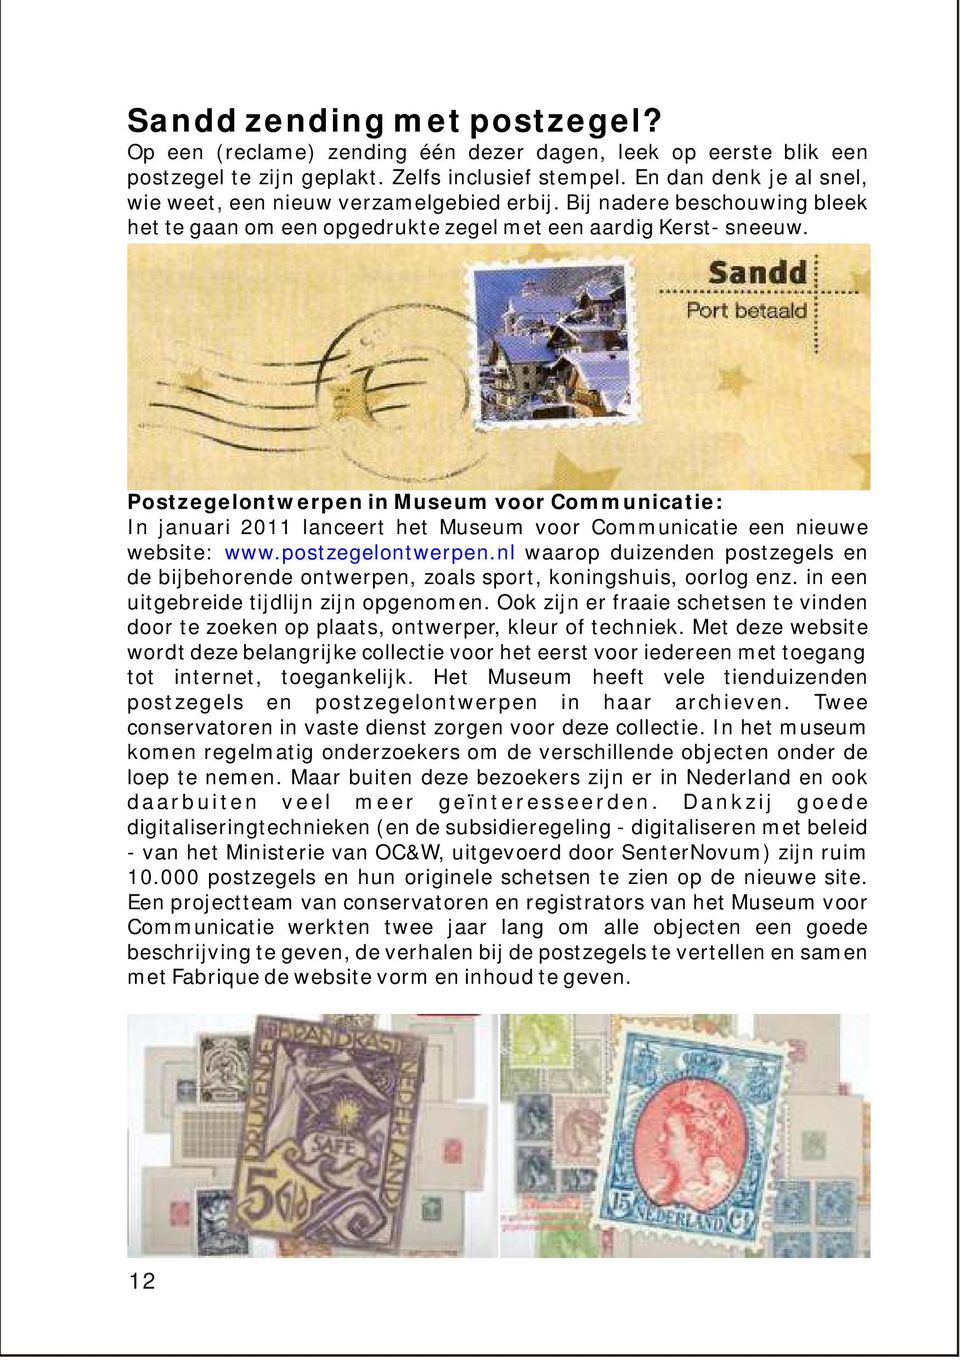 Postzegelontwerpen in Museum voor Communicatie: In januari 2011 lanceert het Museum voor Communicatie een nieuwe website: www.postzegelontwerpen.